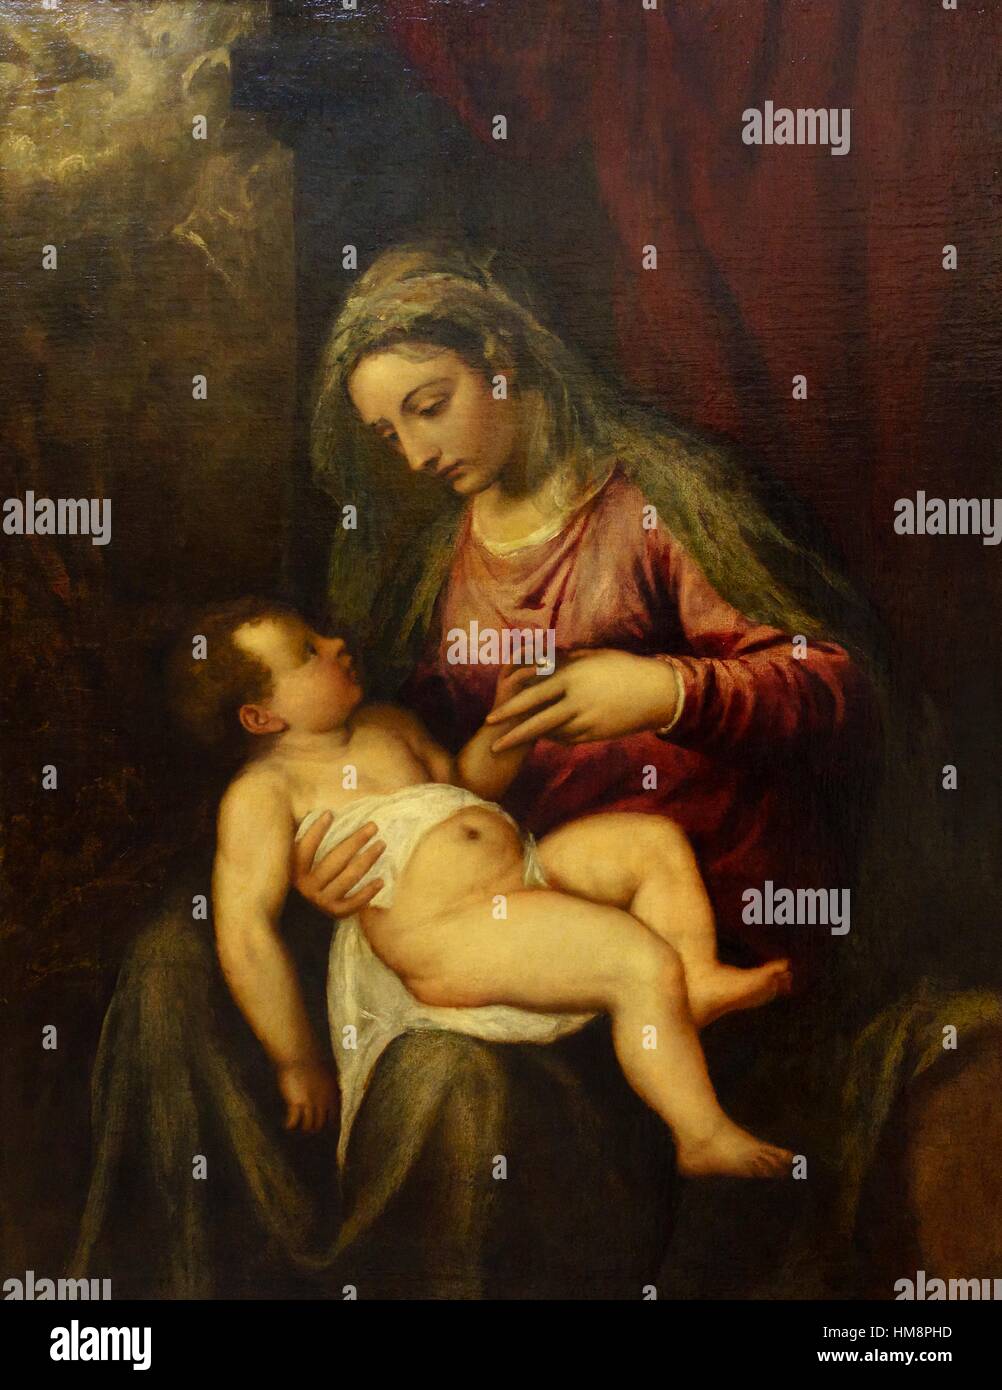 Tiziano Vecellio - Madonna col Bambino (Virgin and Child) - Gallerie dell’Accademia Museum, Venice Italy Stock Photo